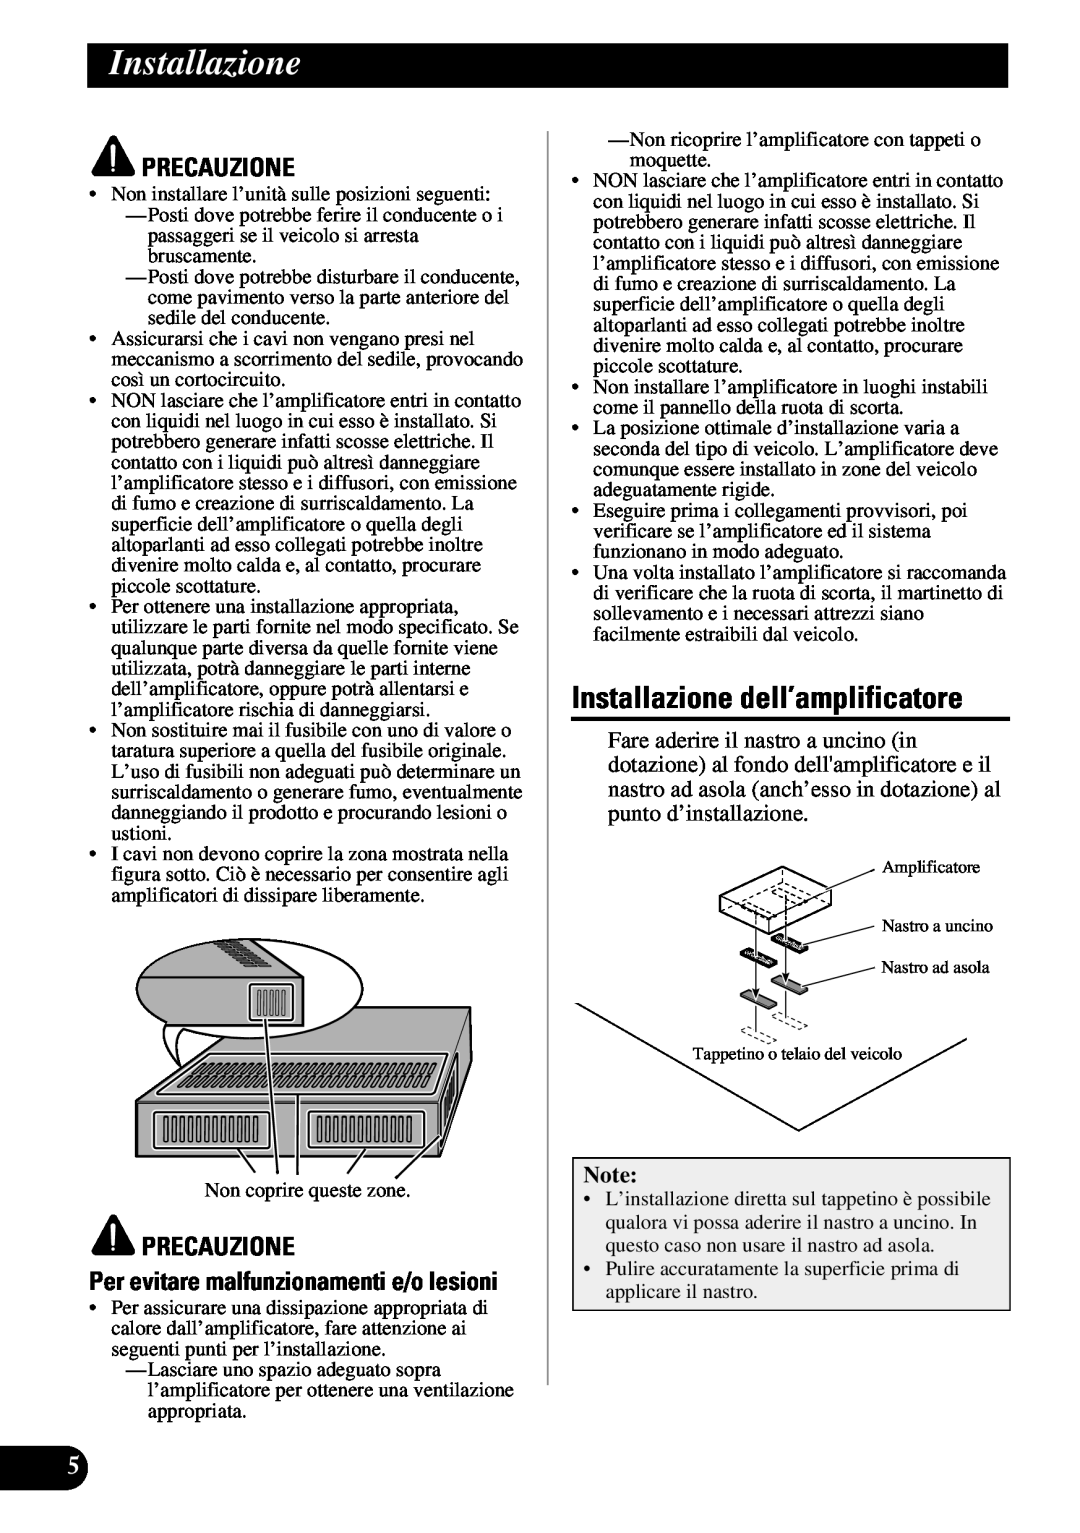 Pioneer ND-G500 owner manual Installazione dell’amplificatore, Per evitare malfunzionamenti e/o lesioni, Precauzione 